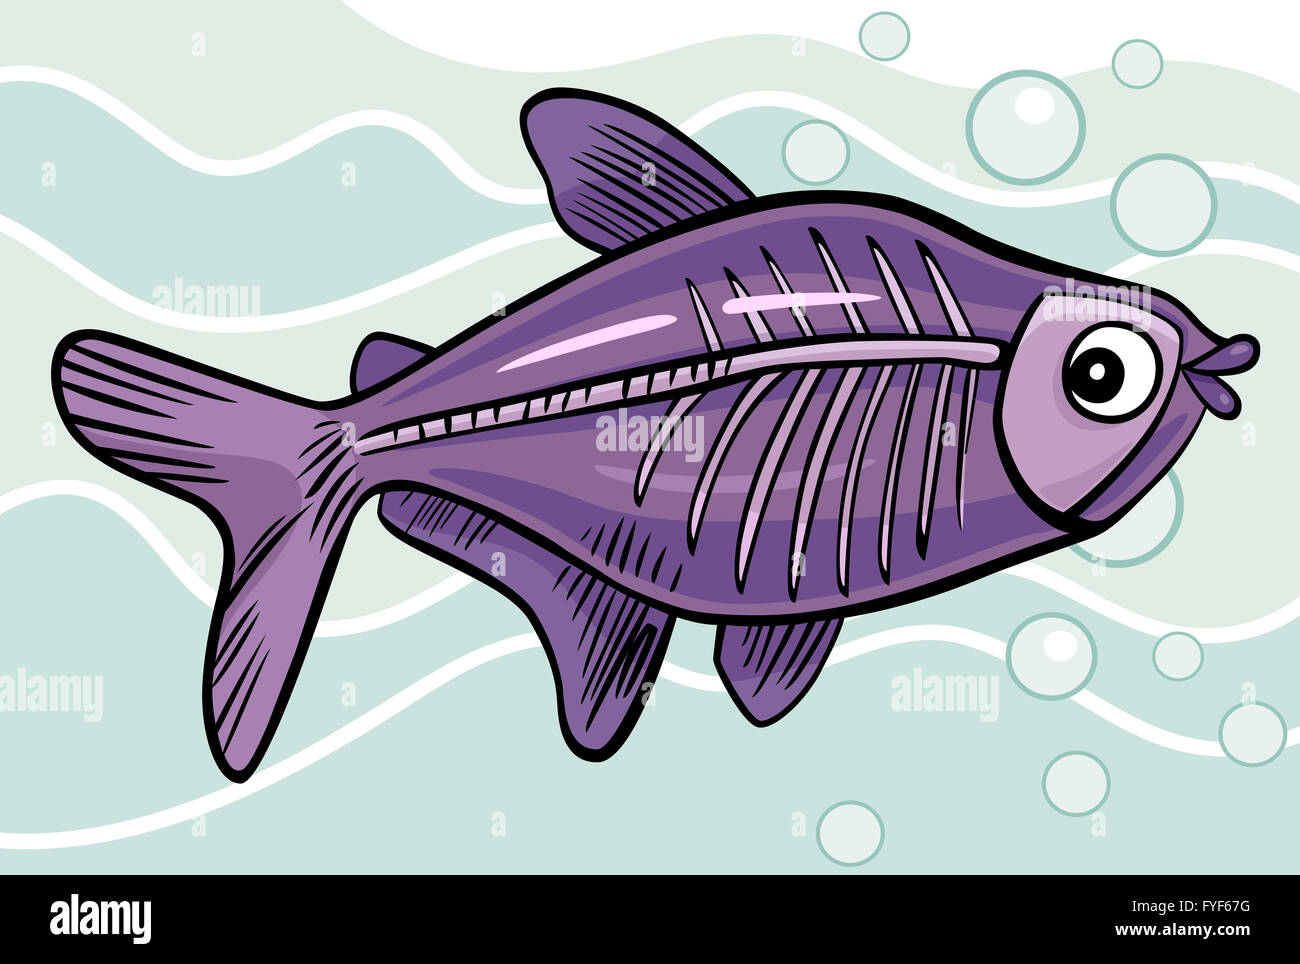 cartoon x-ray fish Stock Photo